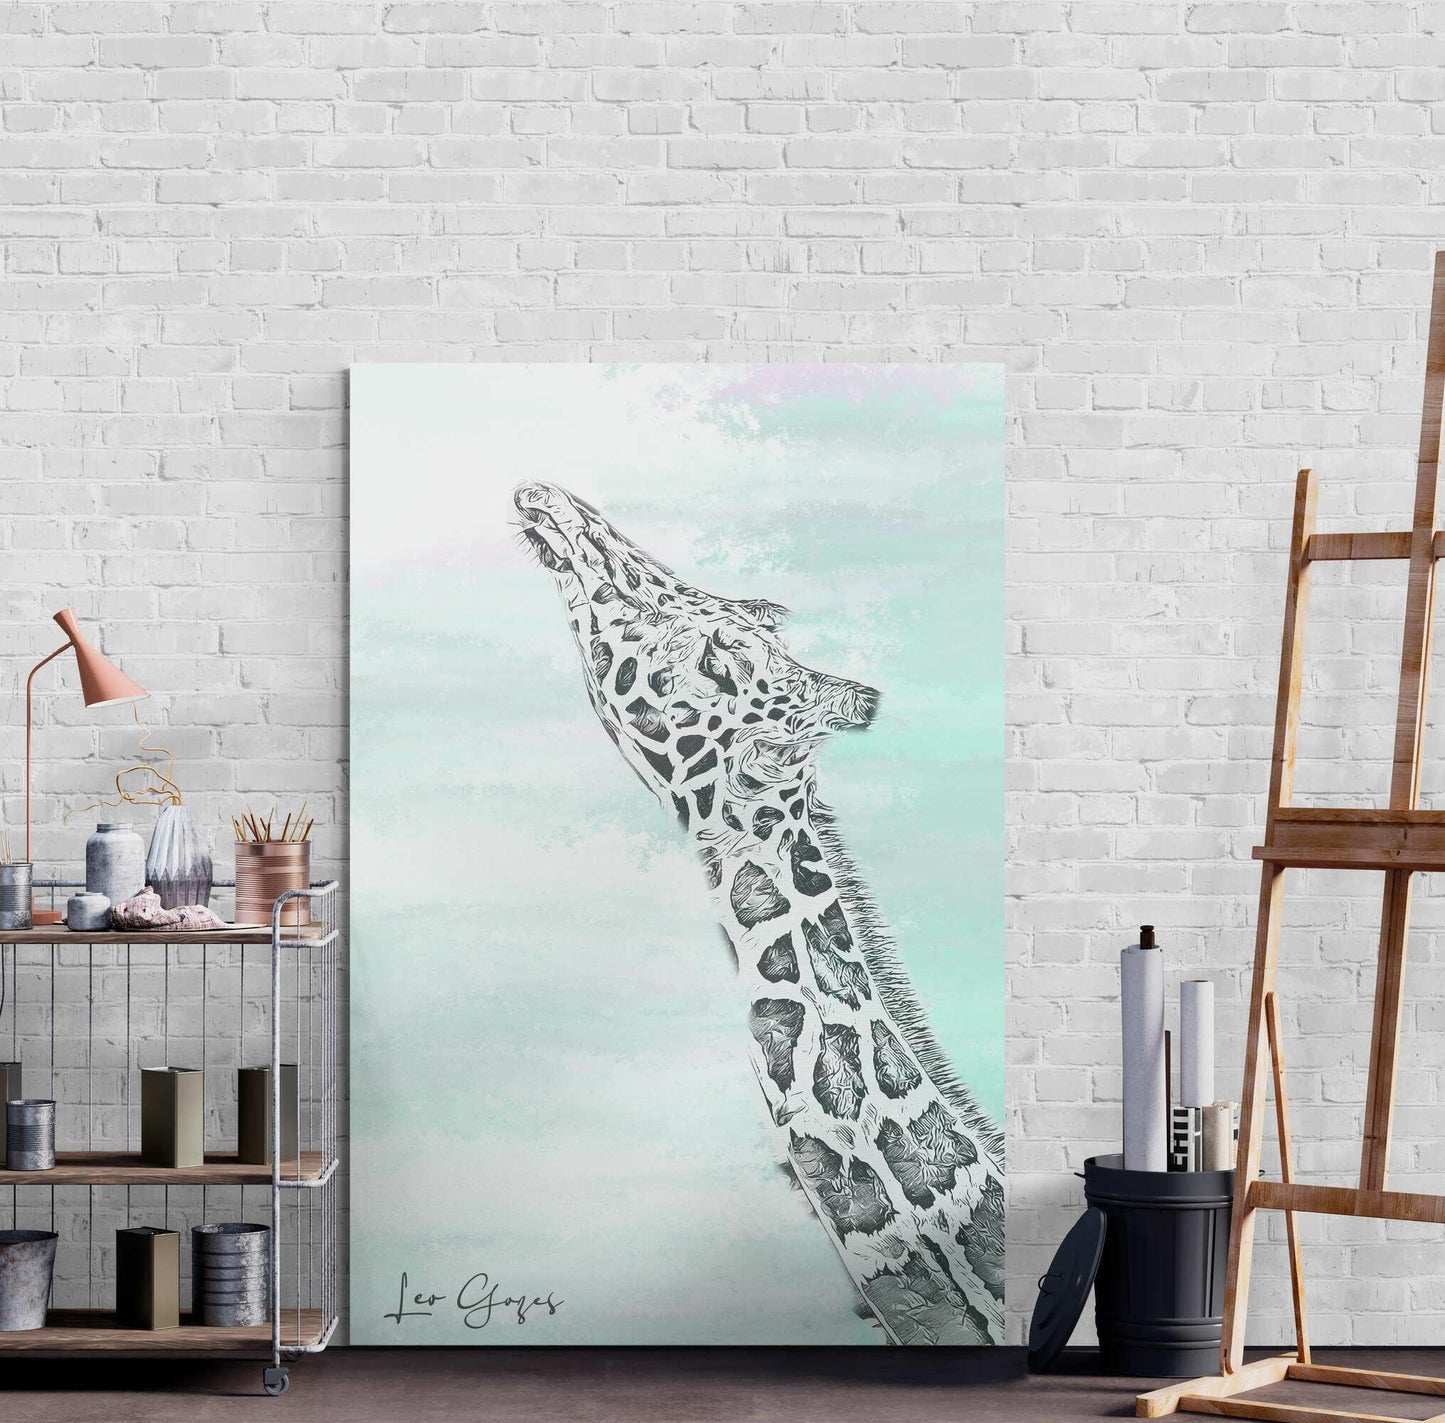 Giraffe & More Wall Art - ARTAX GALLERY